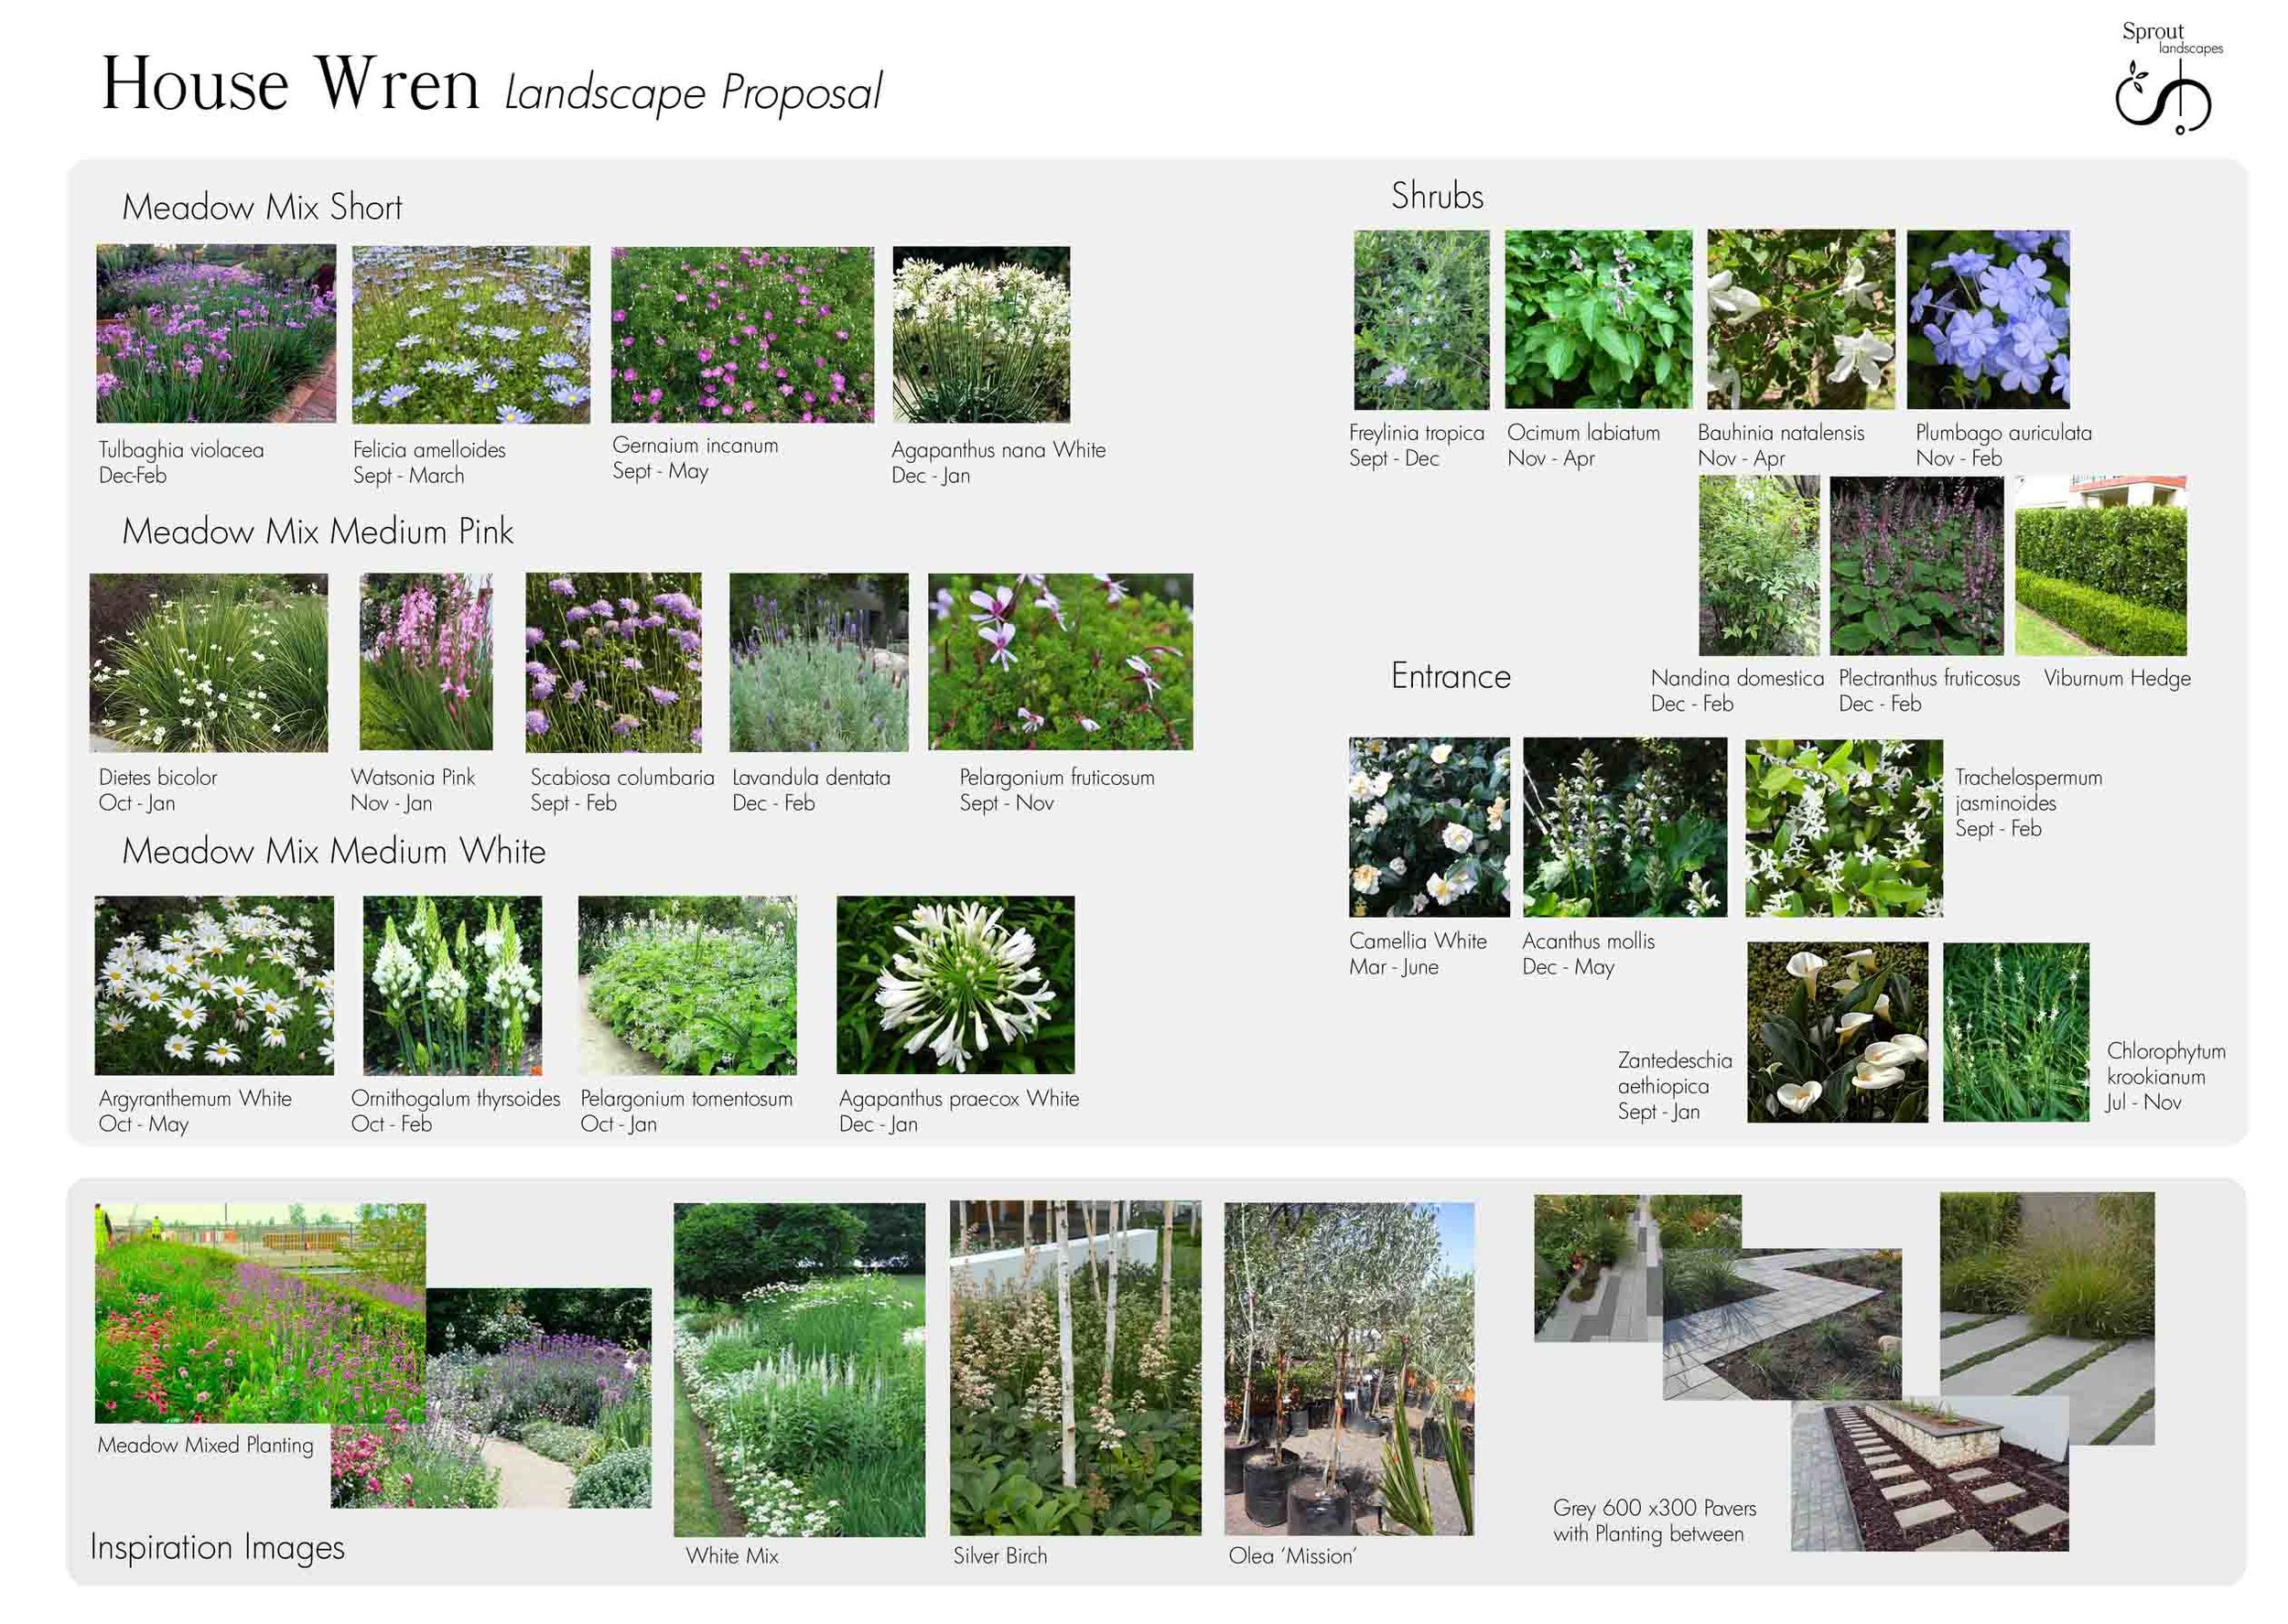 House Wren plant palette 160913 rev2_edited-1.jpg